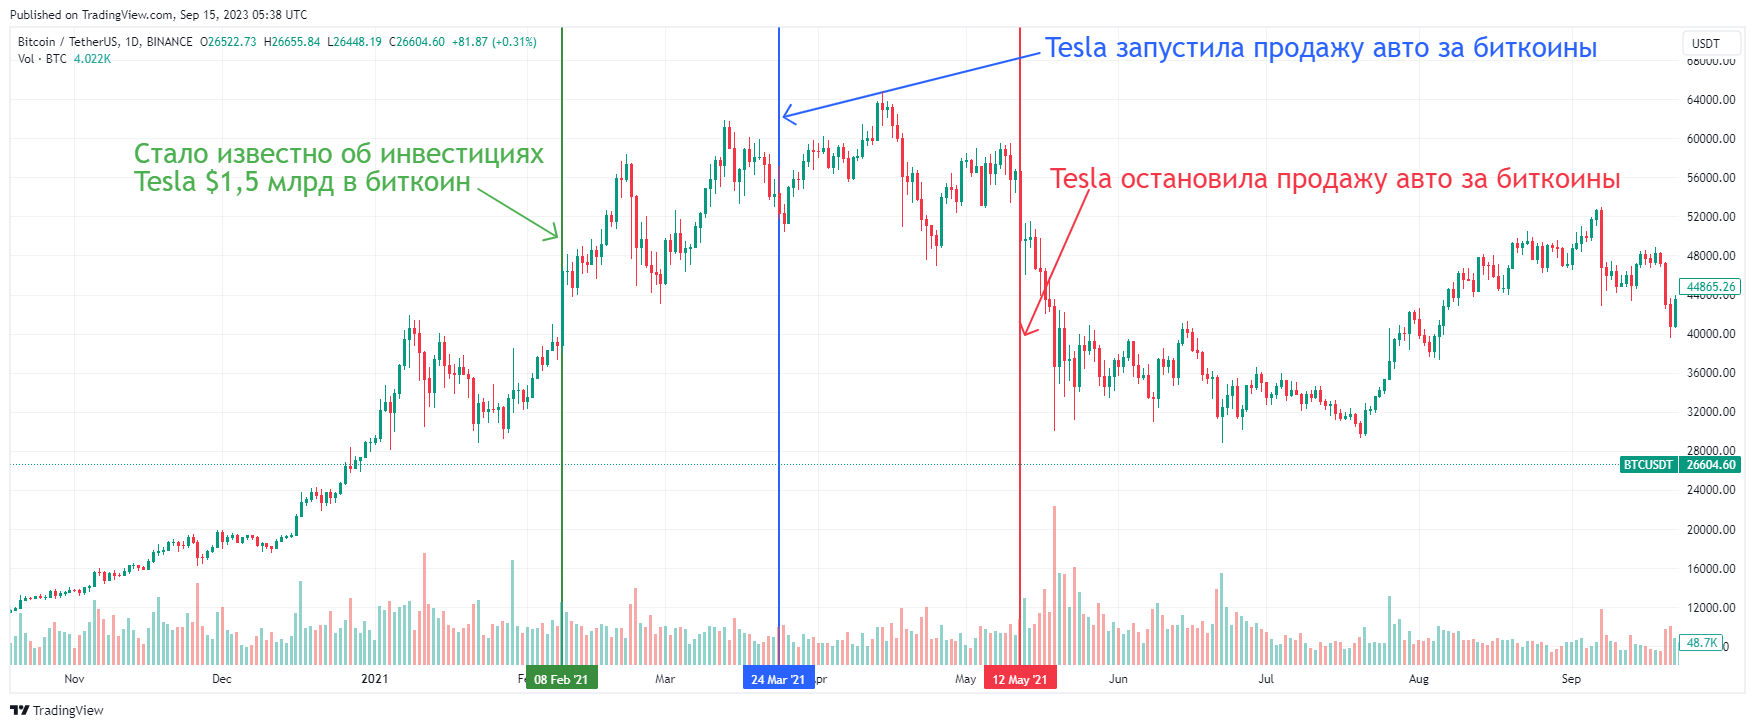 Реакция биткоина на решения Tesla